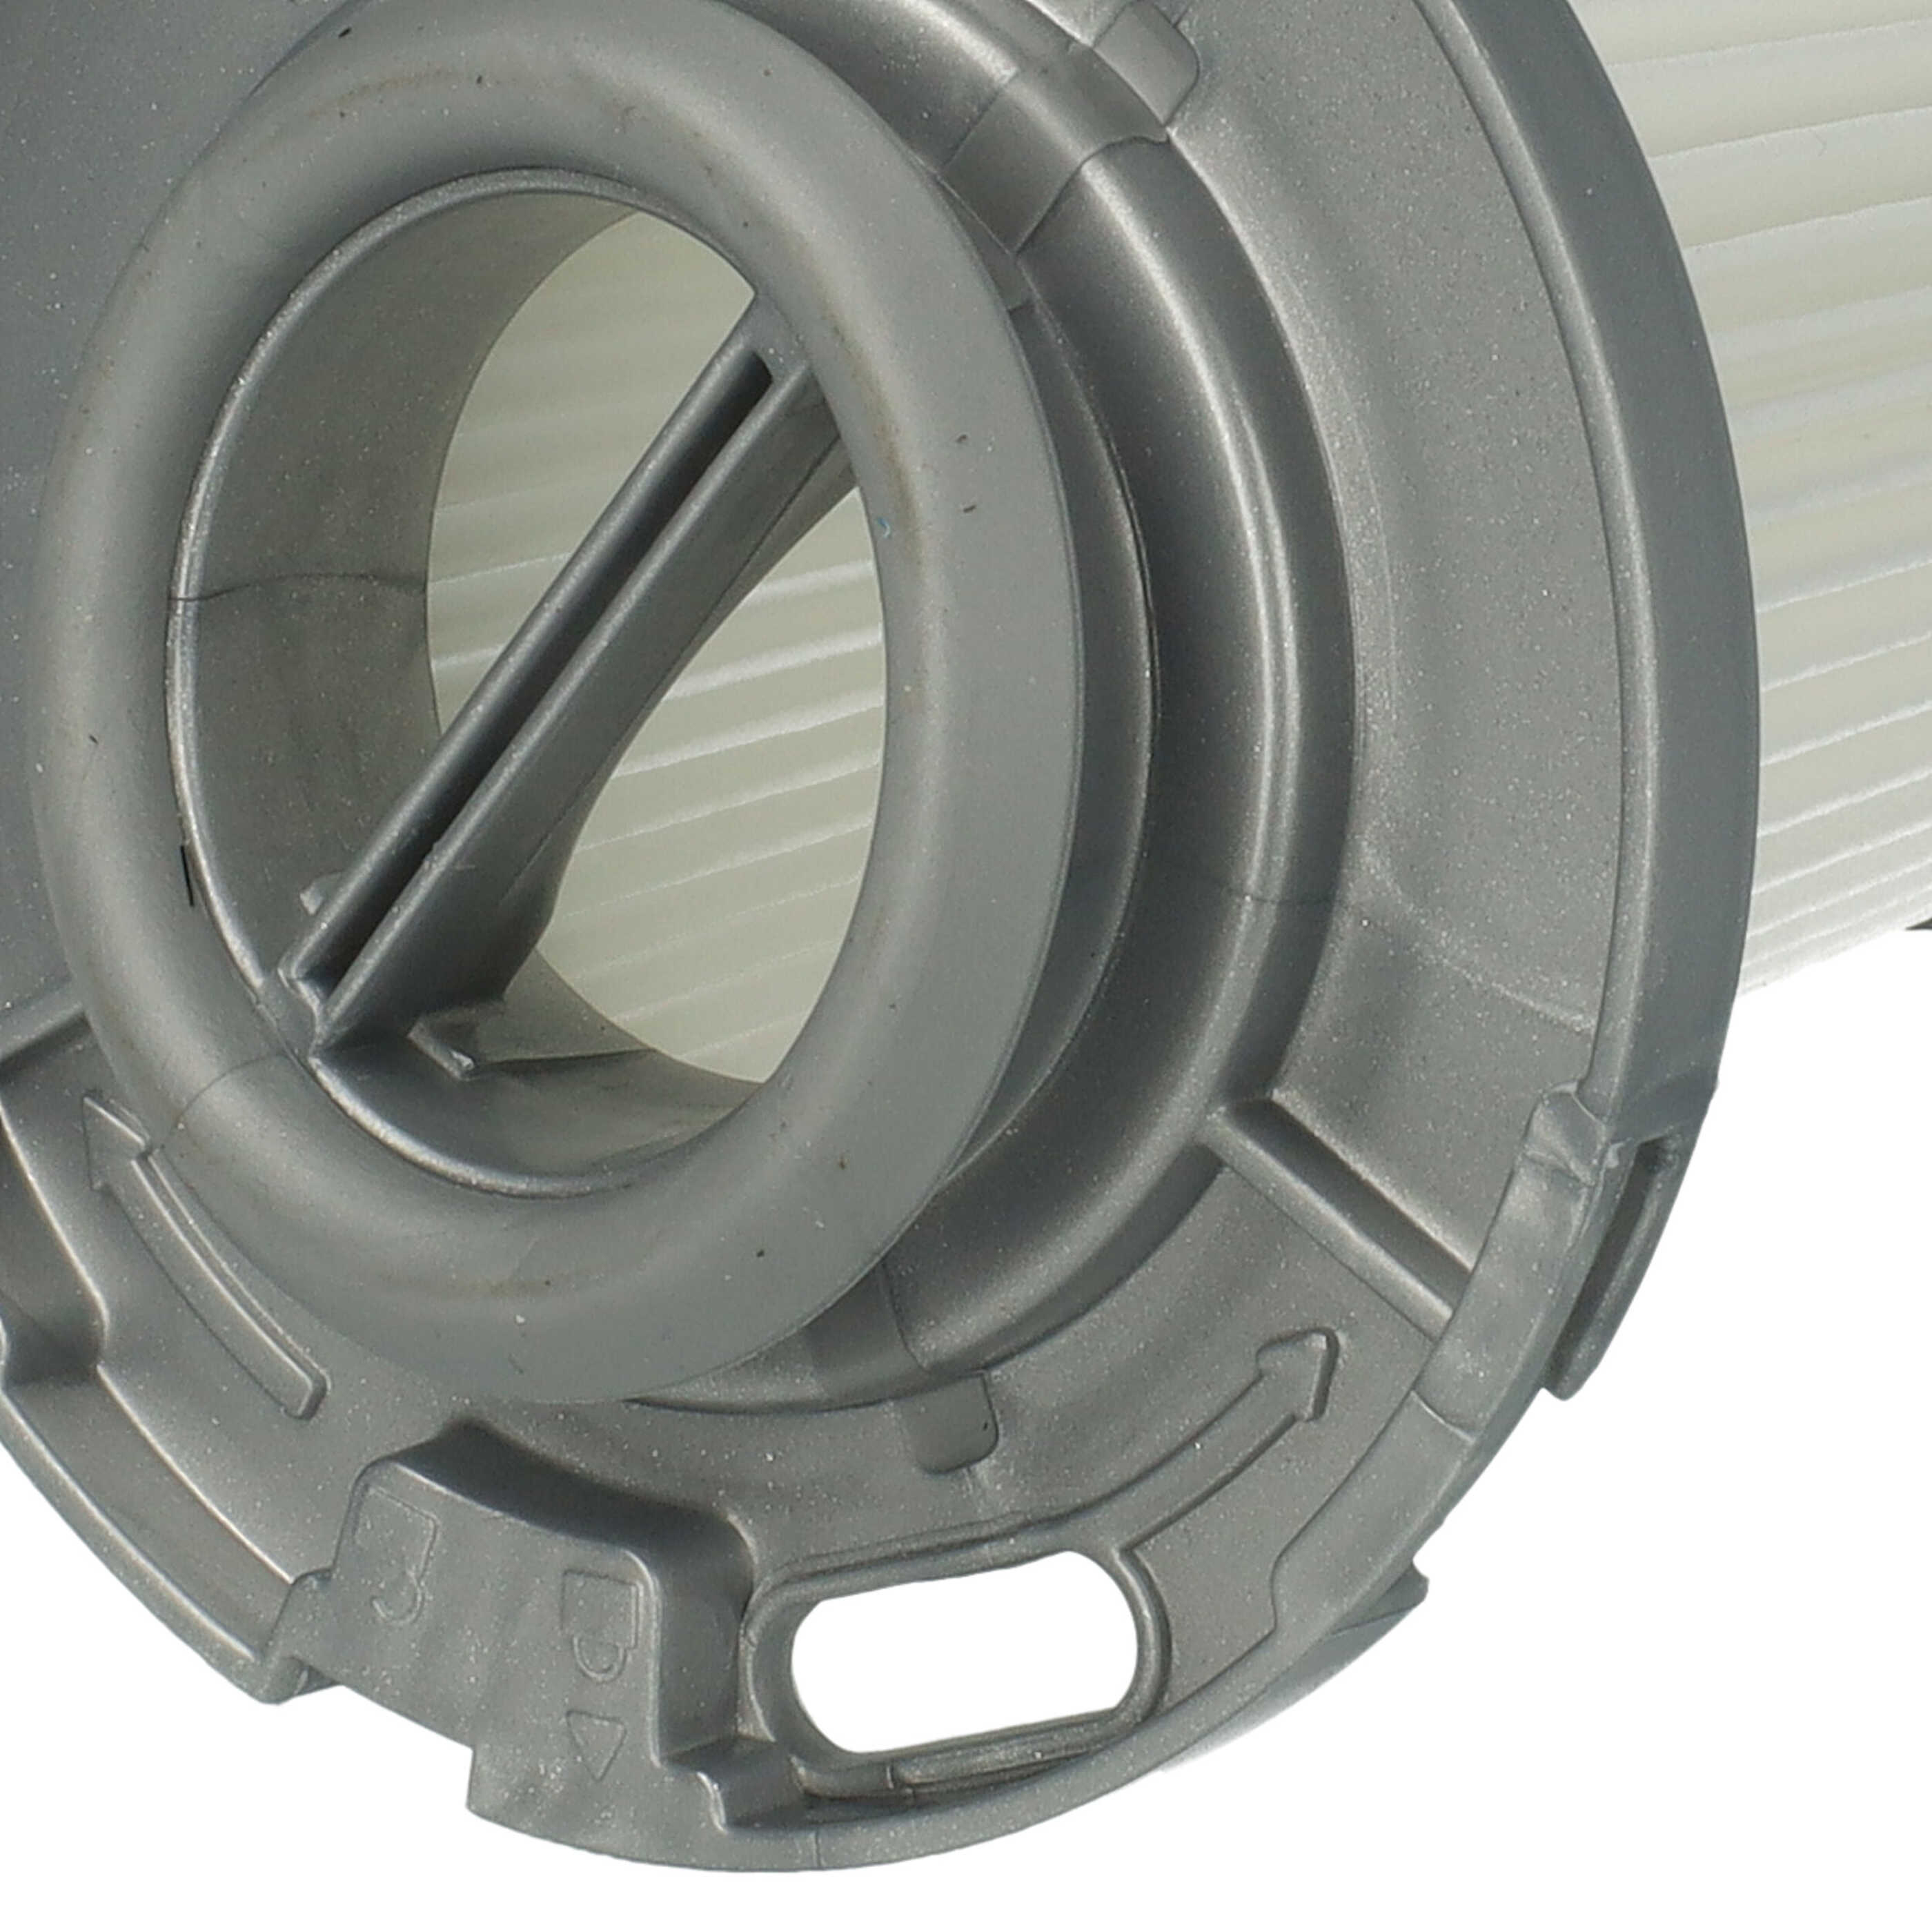 Filtre remplace Rowenta ZR009005 pour aspirateur - Cartouche Filtre